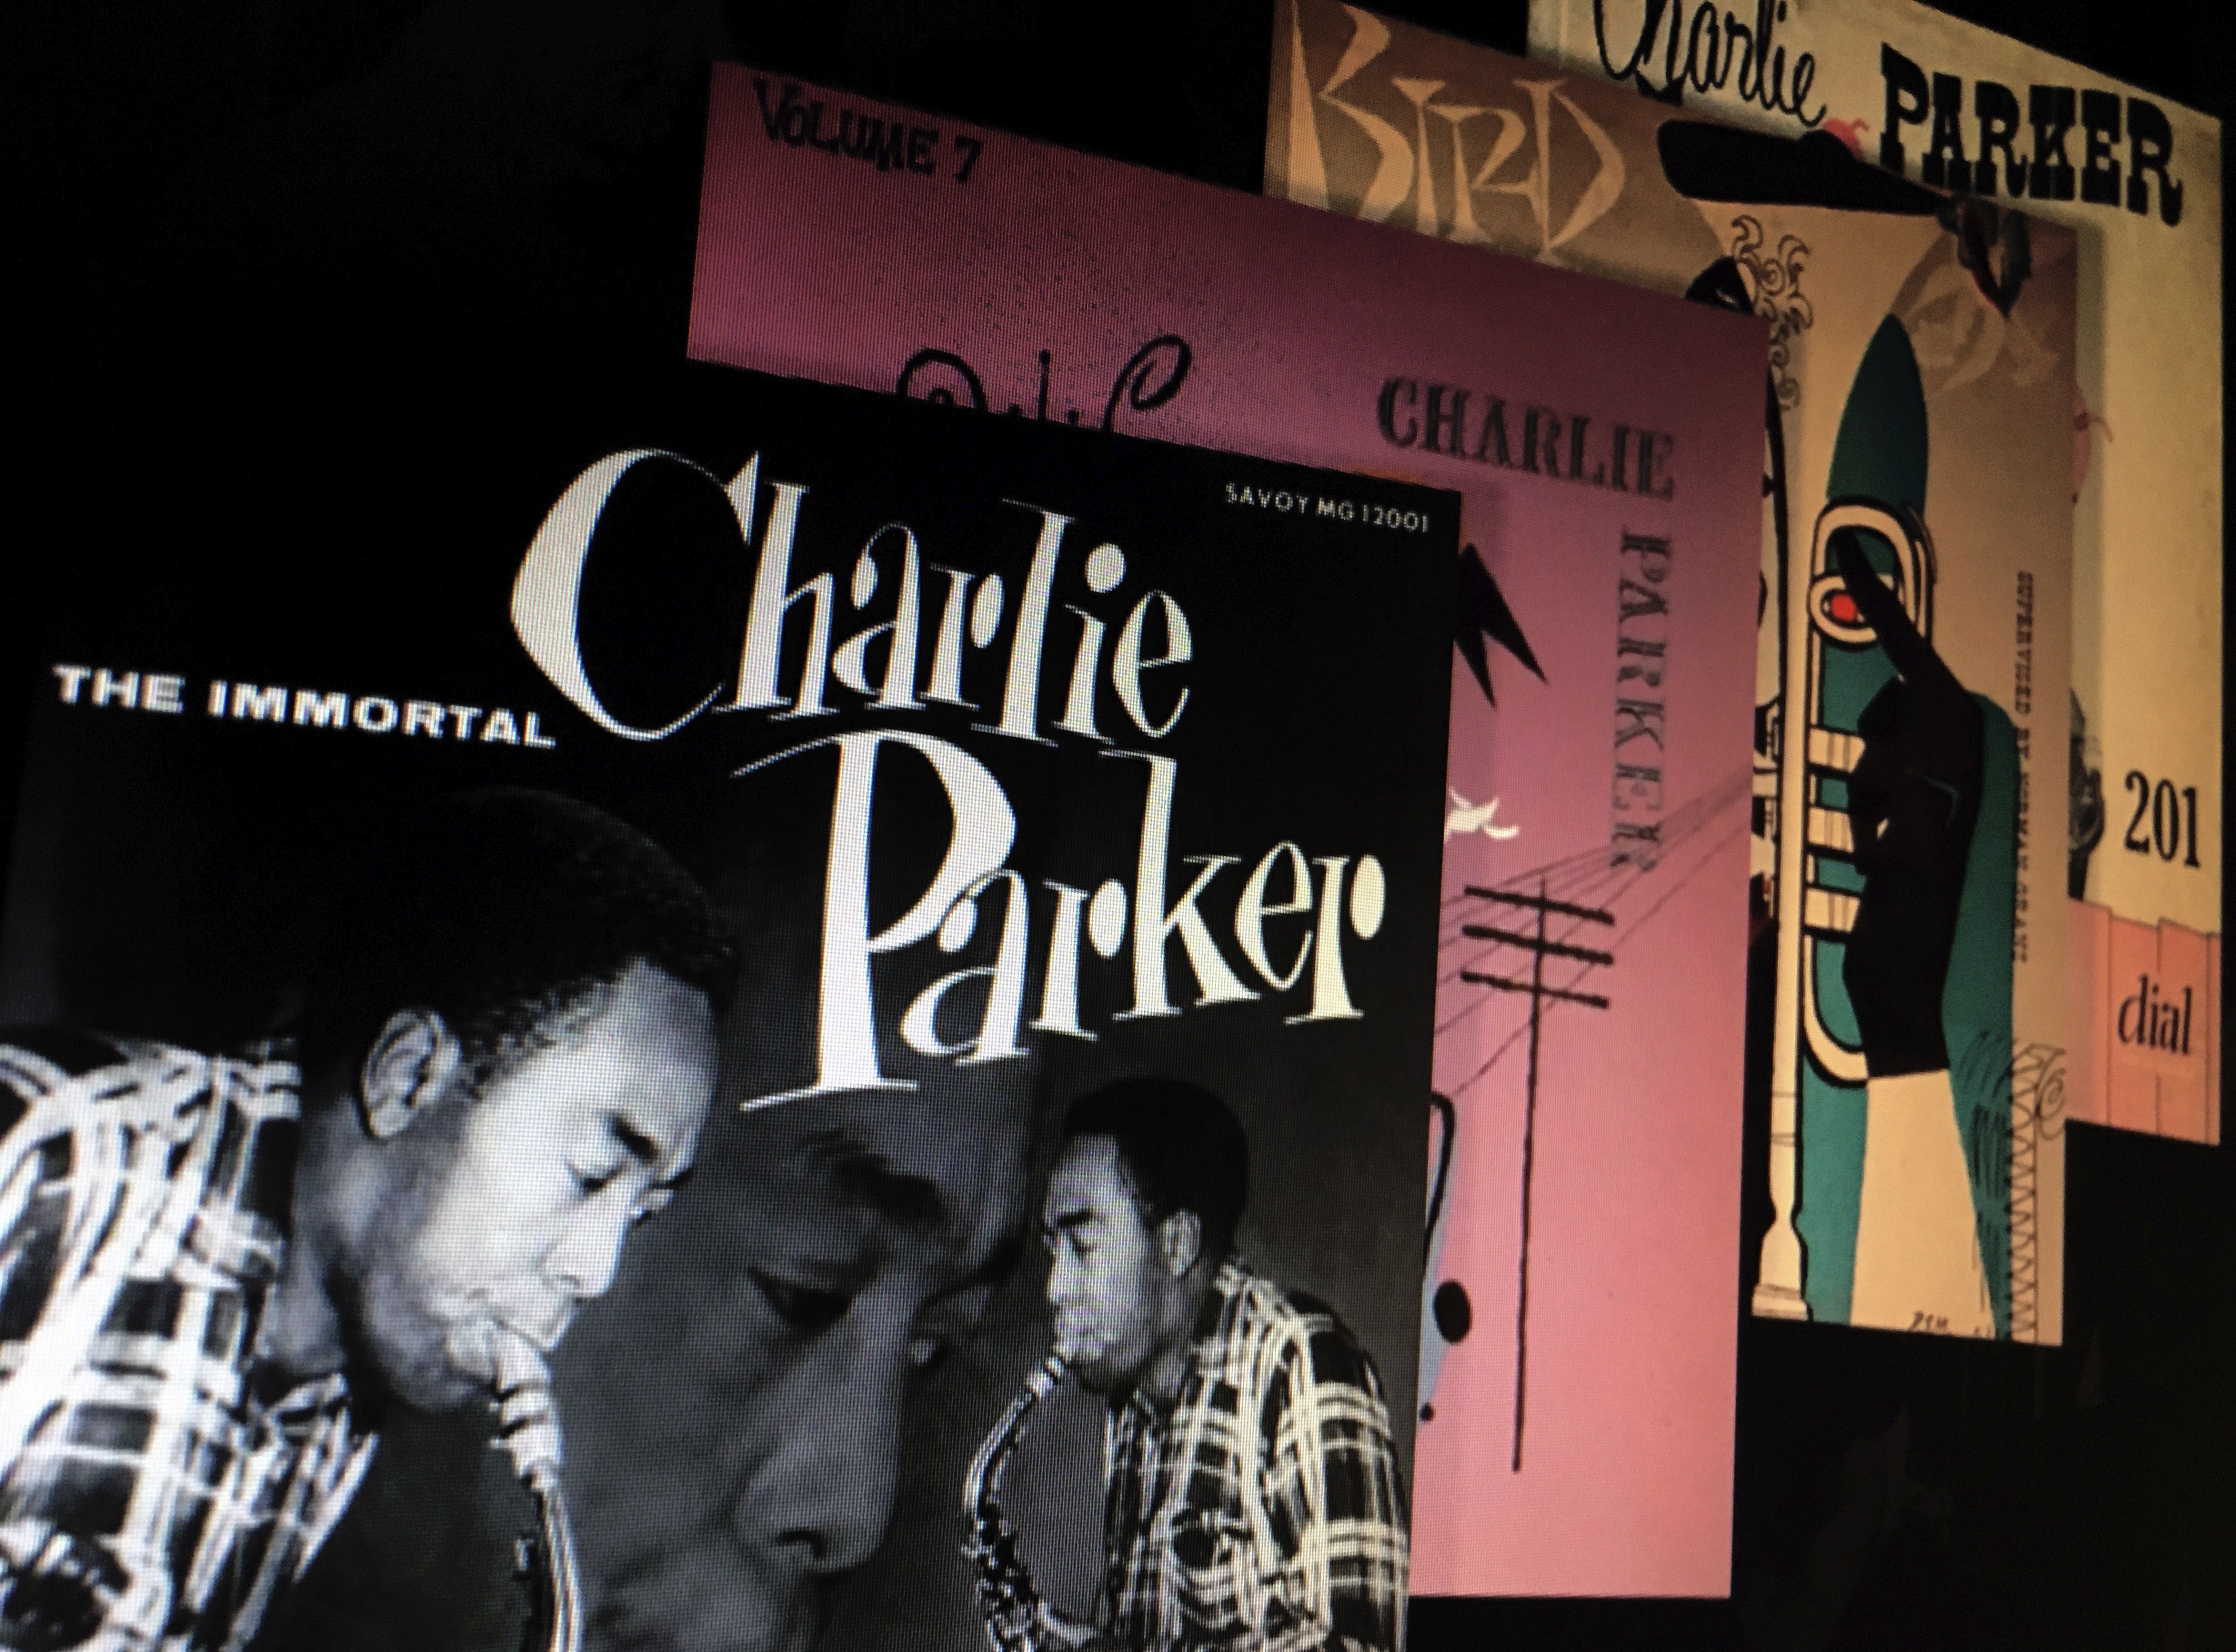 Vista de las portadas de algunos discos de Charlie Parker. EFE/charlieparkermusic.com/ No ventas/ No archivo/ Solo uso editorial 